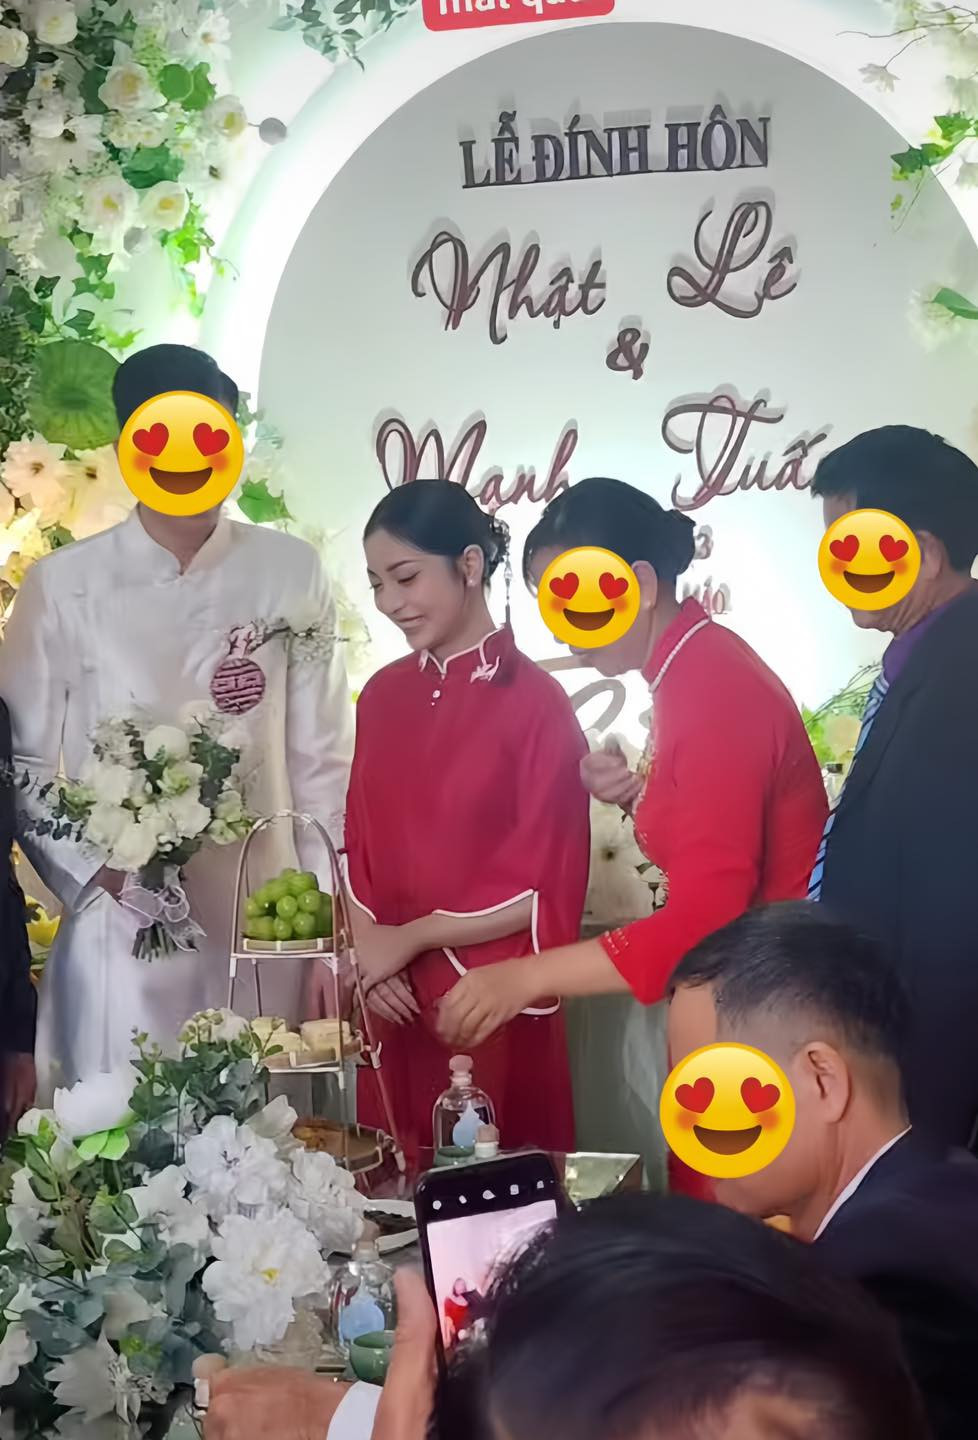 Rộ ảnh bạn gái cũ Quang Hải lên xe hoa “so kè” trước tình cũ, khoảnh khắc trong lễ đính hôn khiến netizen xôn xao? - ảnh 1